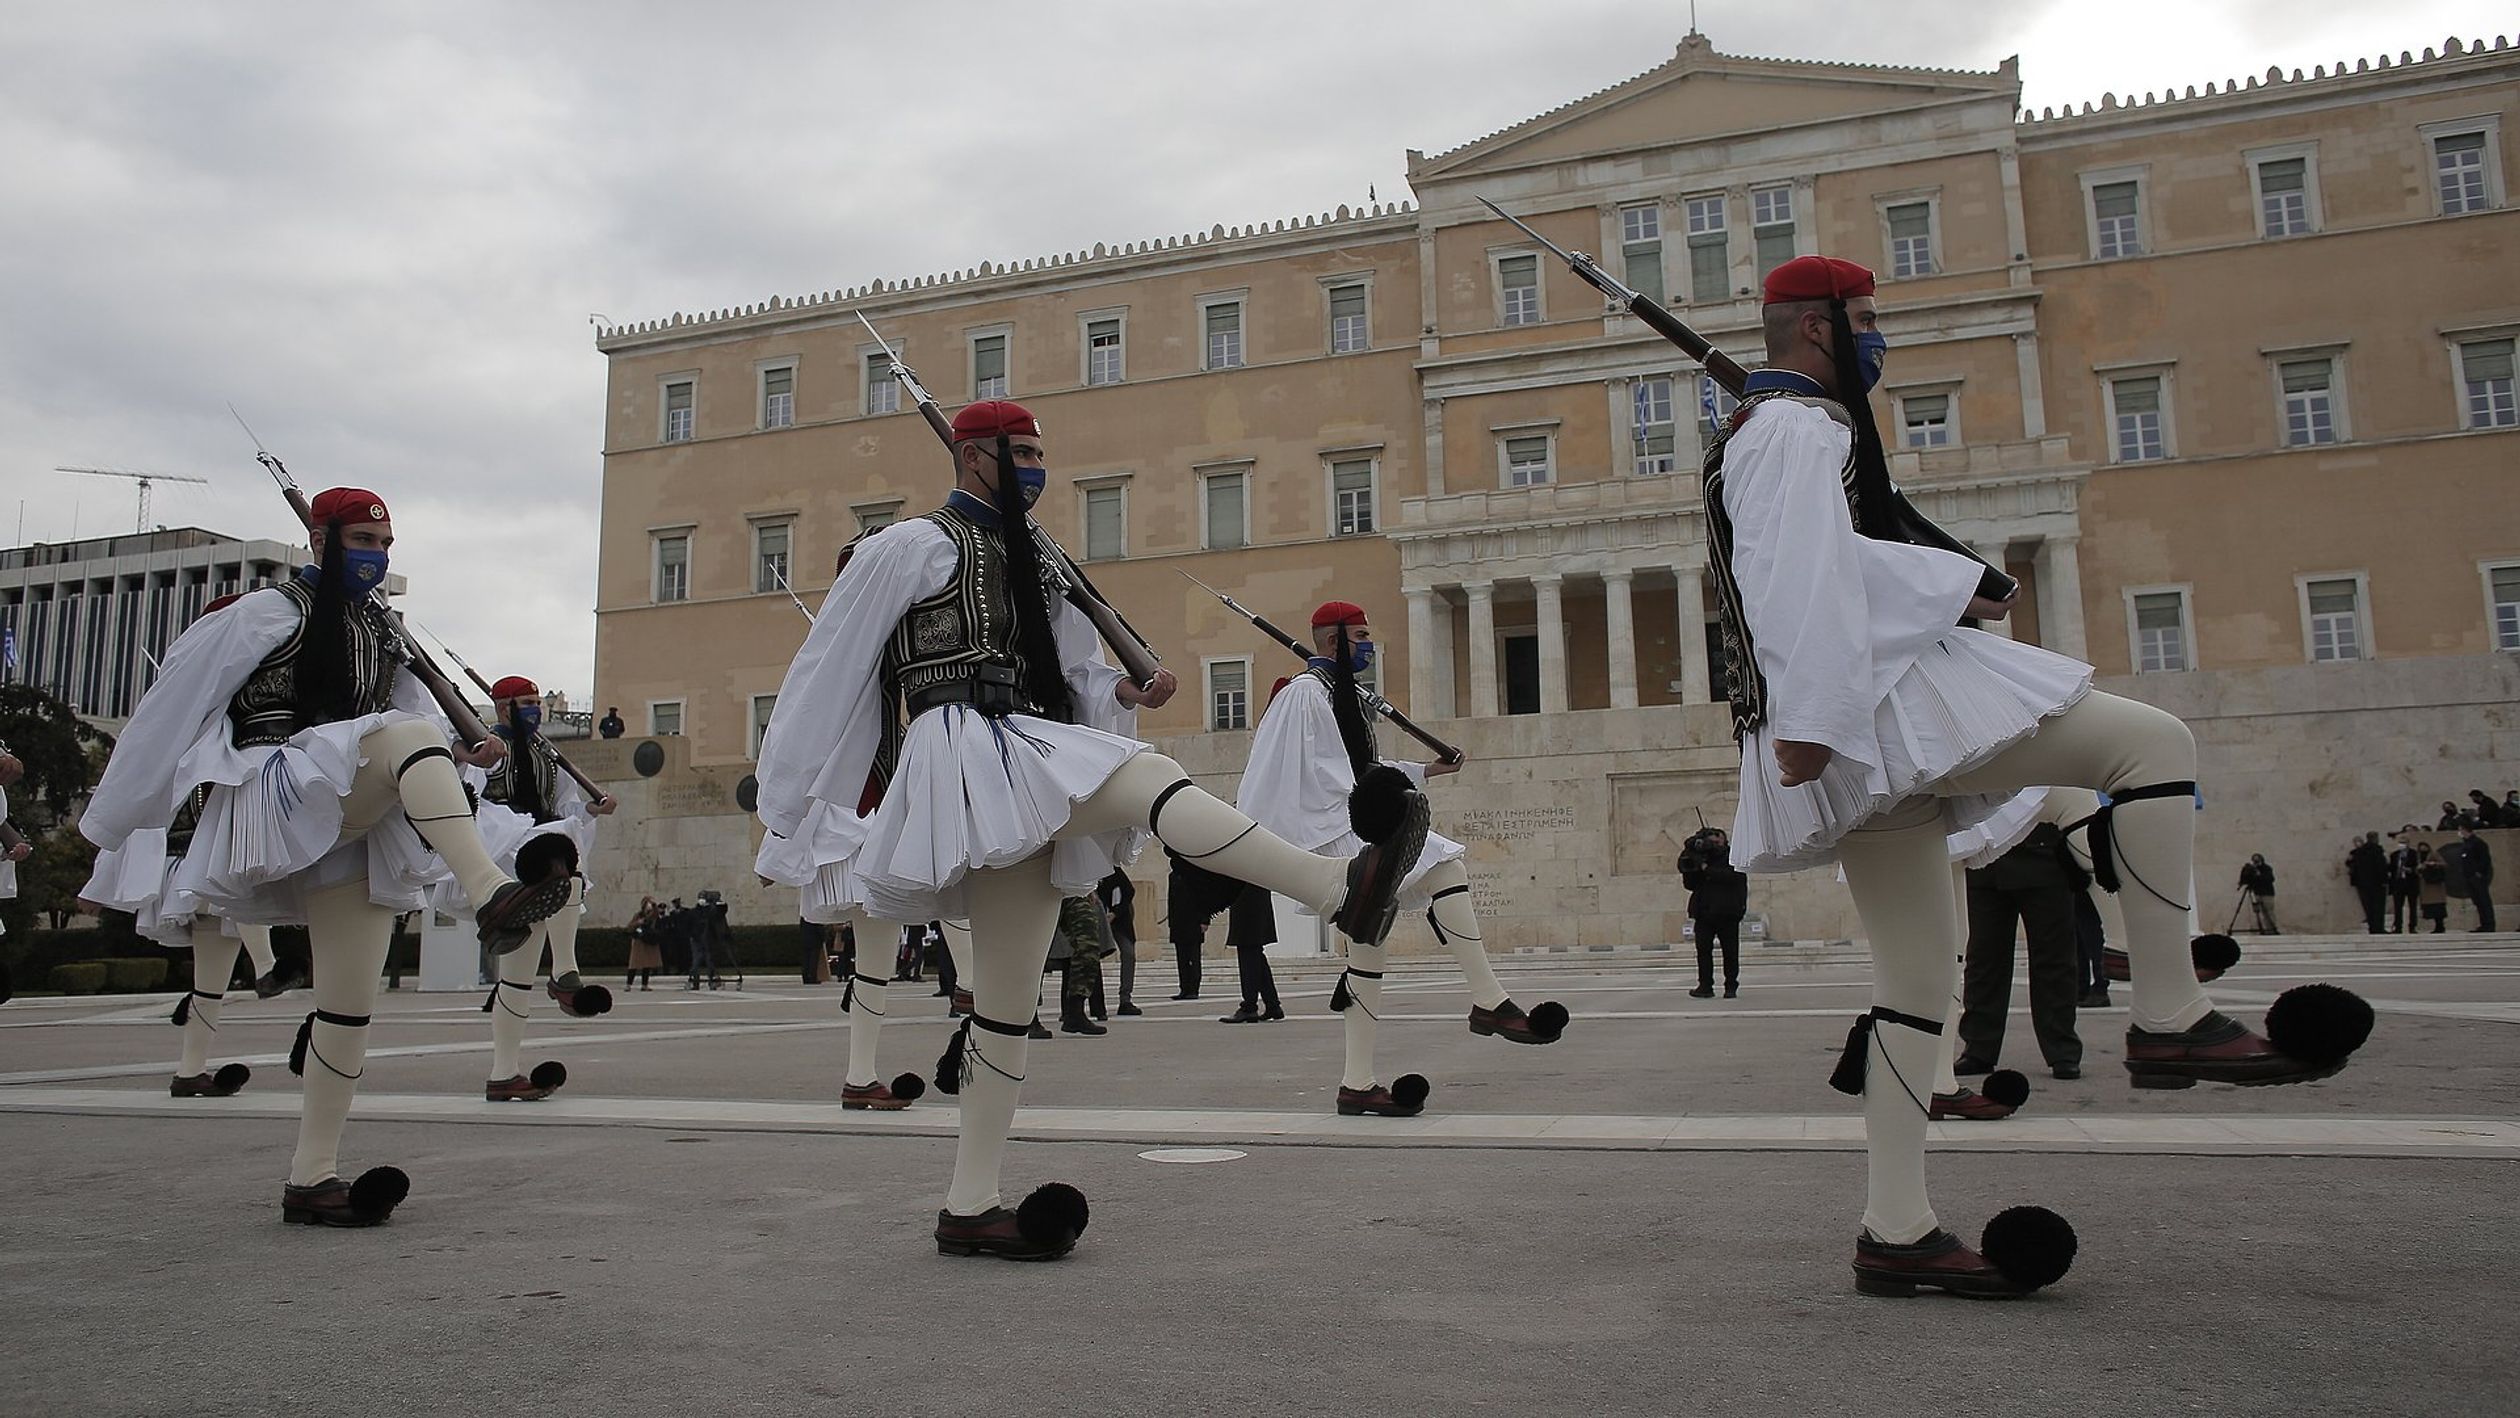 OnafhankelijkheidsceremonieGriekenland2.jpg